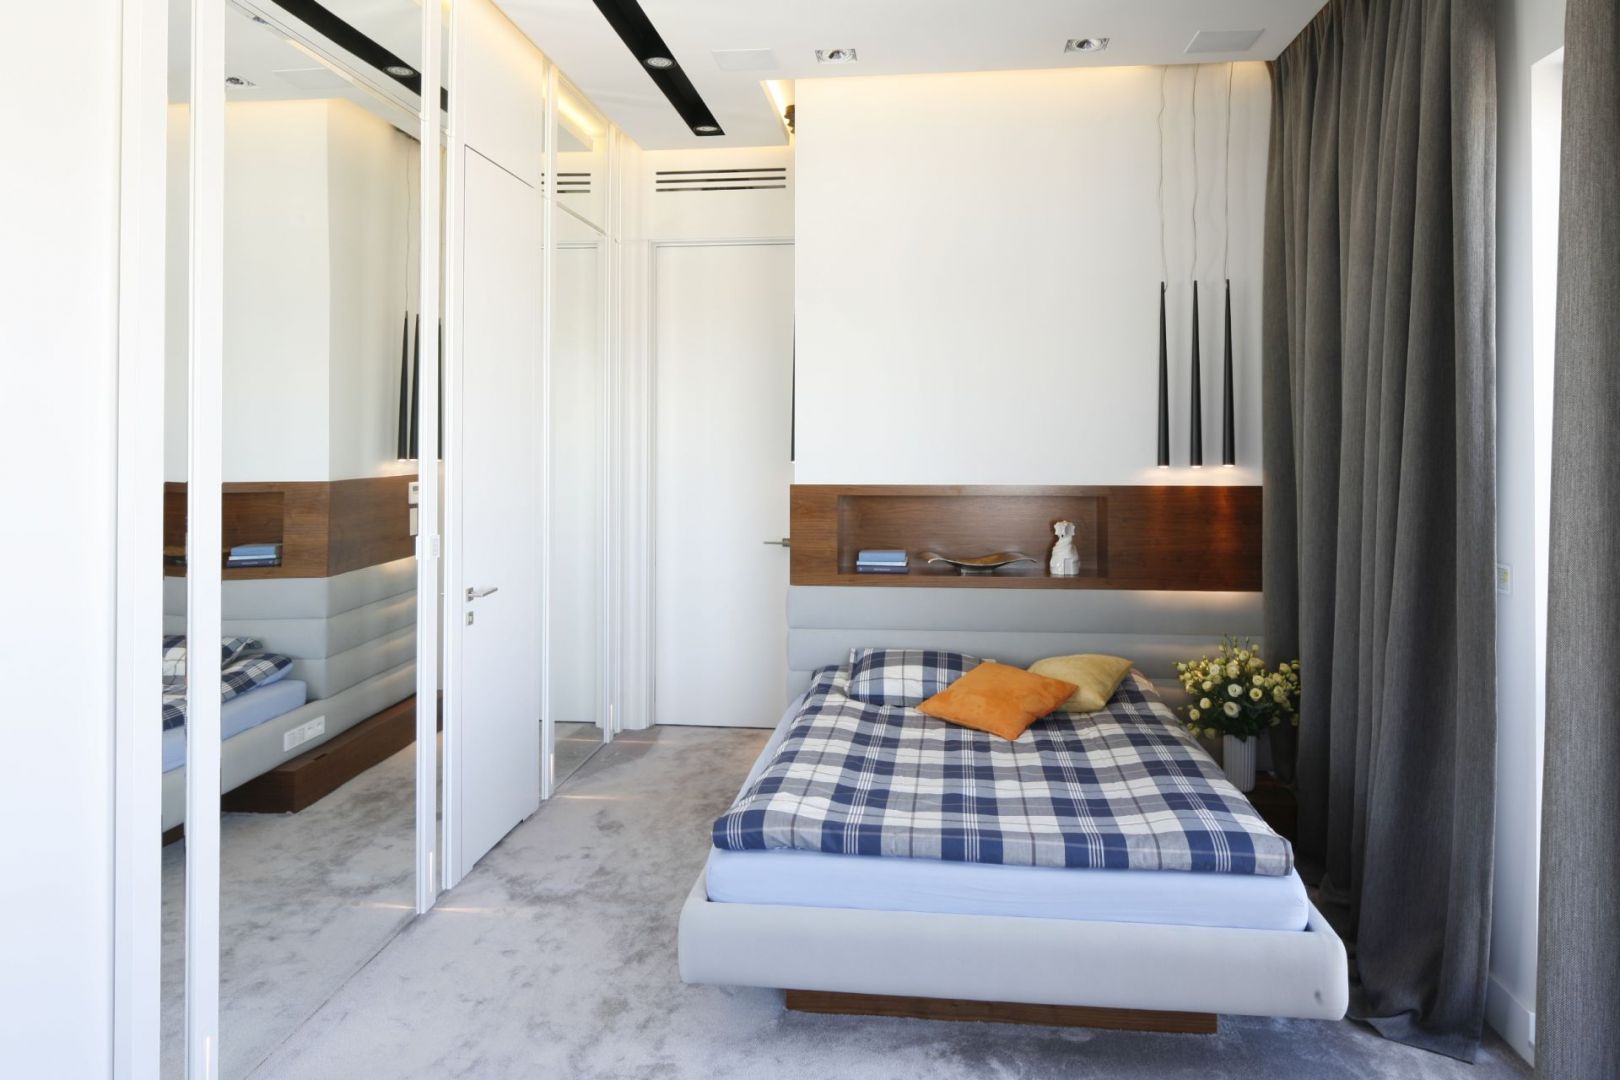 Szafa lub garderoba z lustrem, optycznie powiększy małą przestrzeń sypialni. Projekt: Monika i Adam Bronikowscy. Fot. Bartosz Jarosz